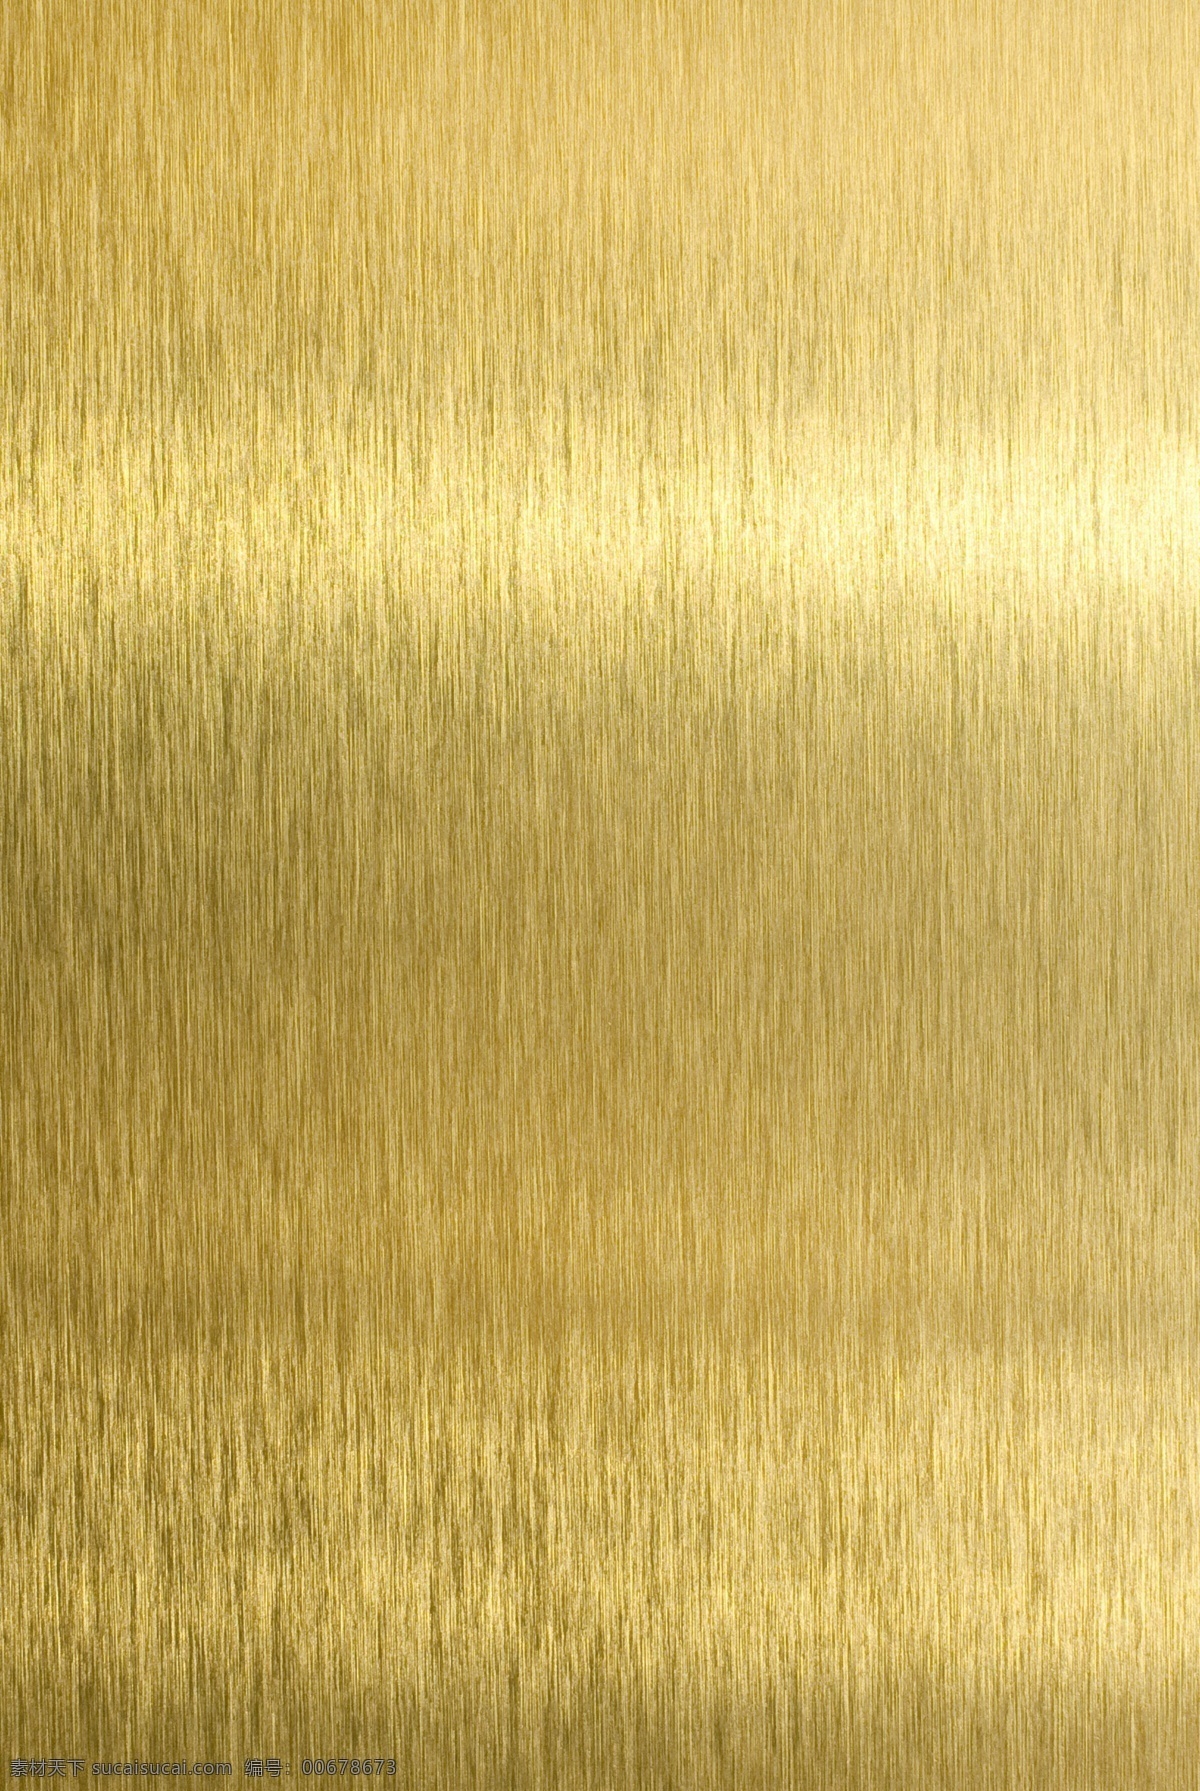 金色拉斯 金黄色 金色背景 背景底纹 底纹边框 金属质感 金属材质 金属材料 金属背景 金属拉丝 金属拉斯 拉丝质感 金属理纹